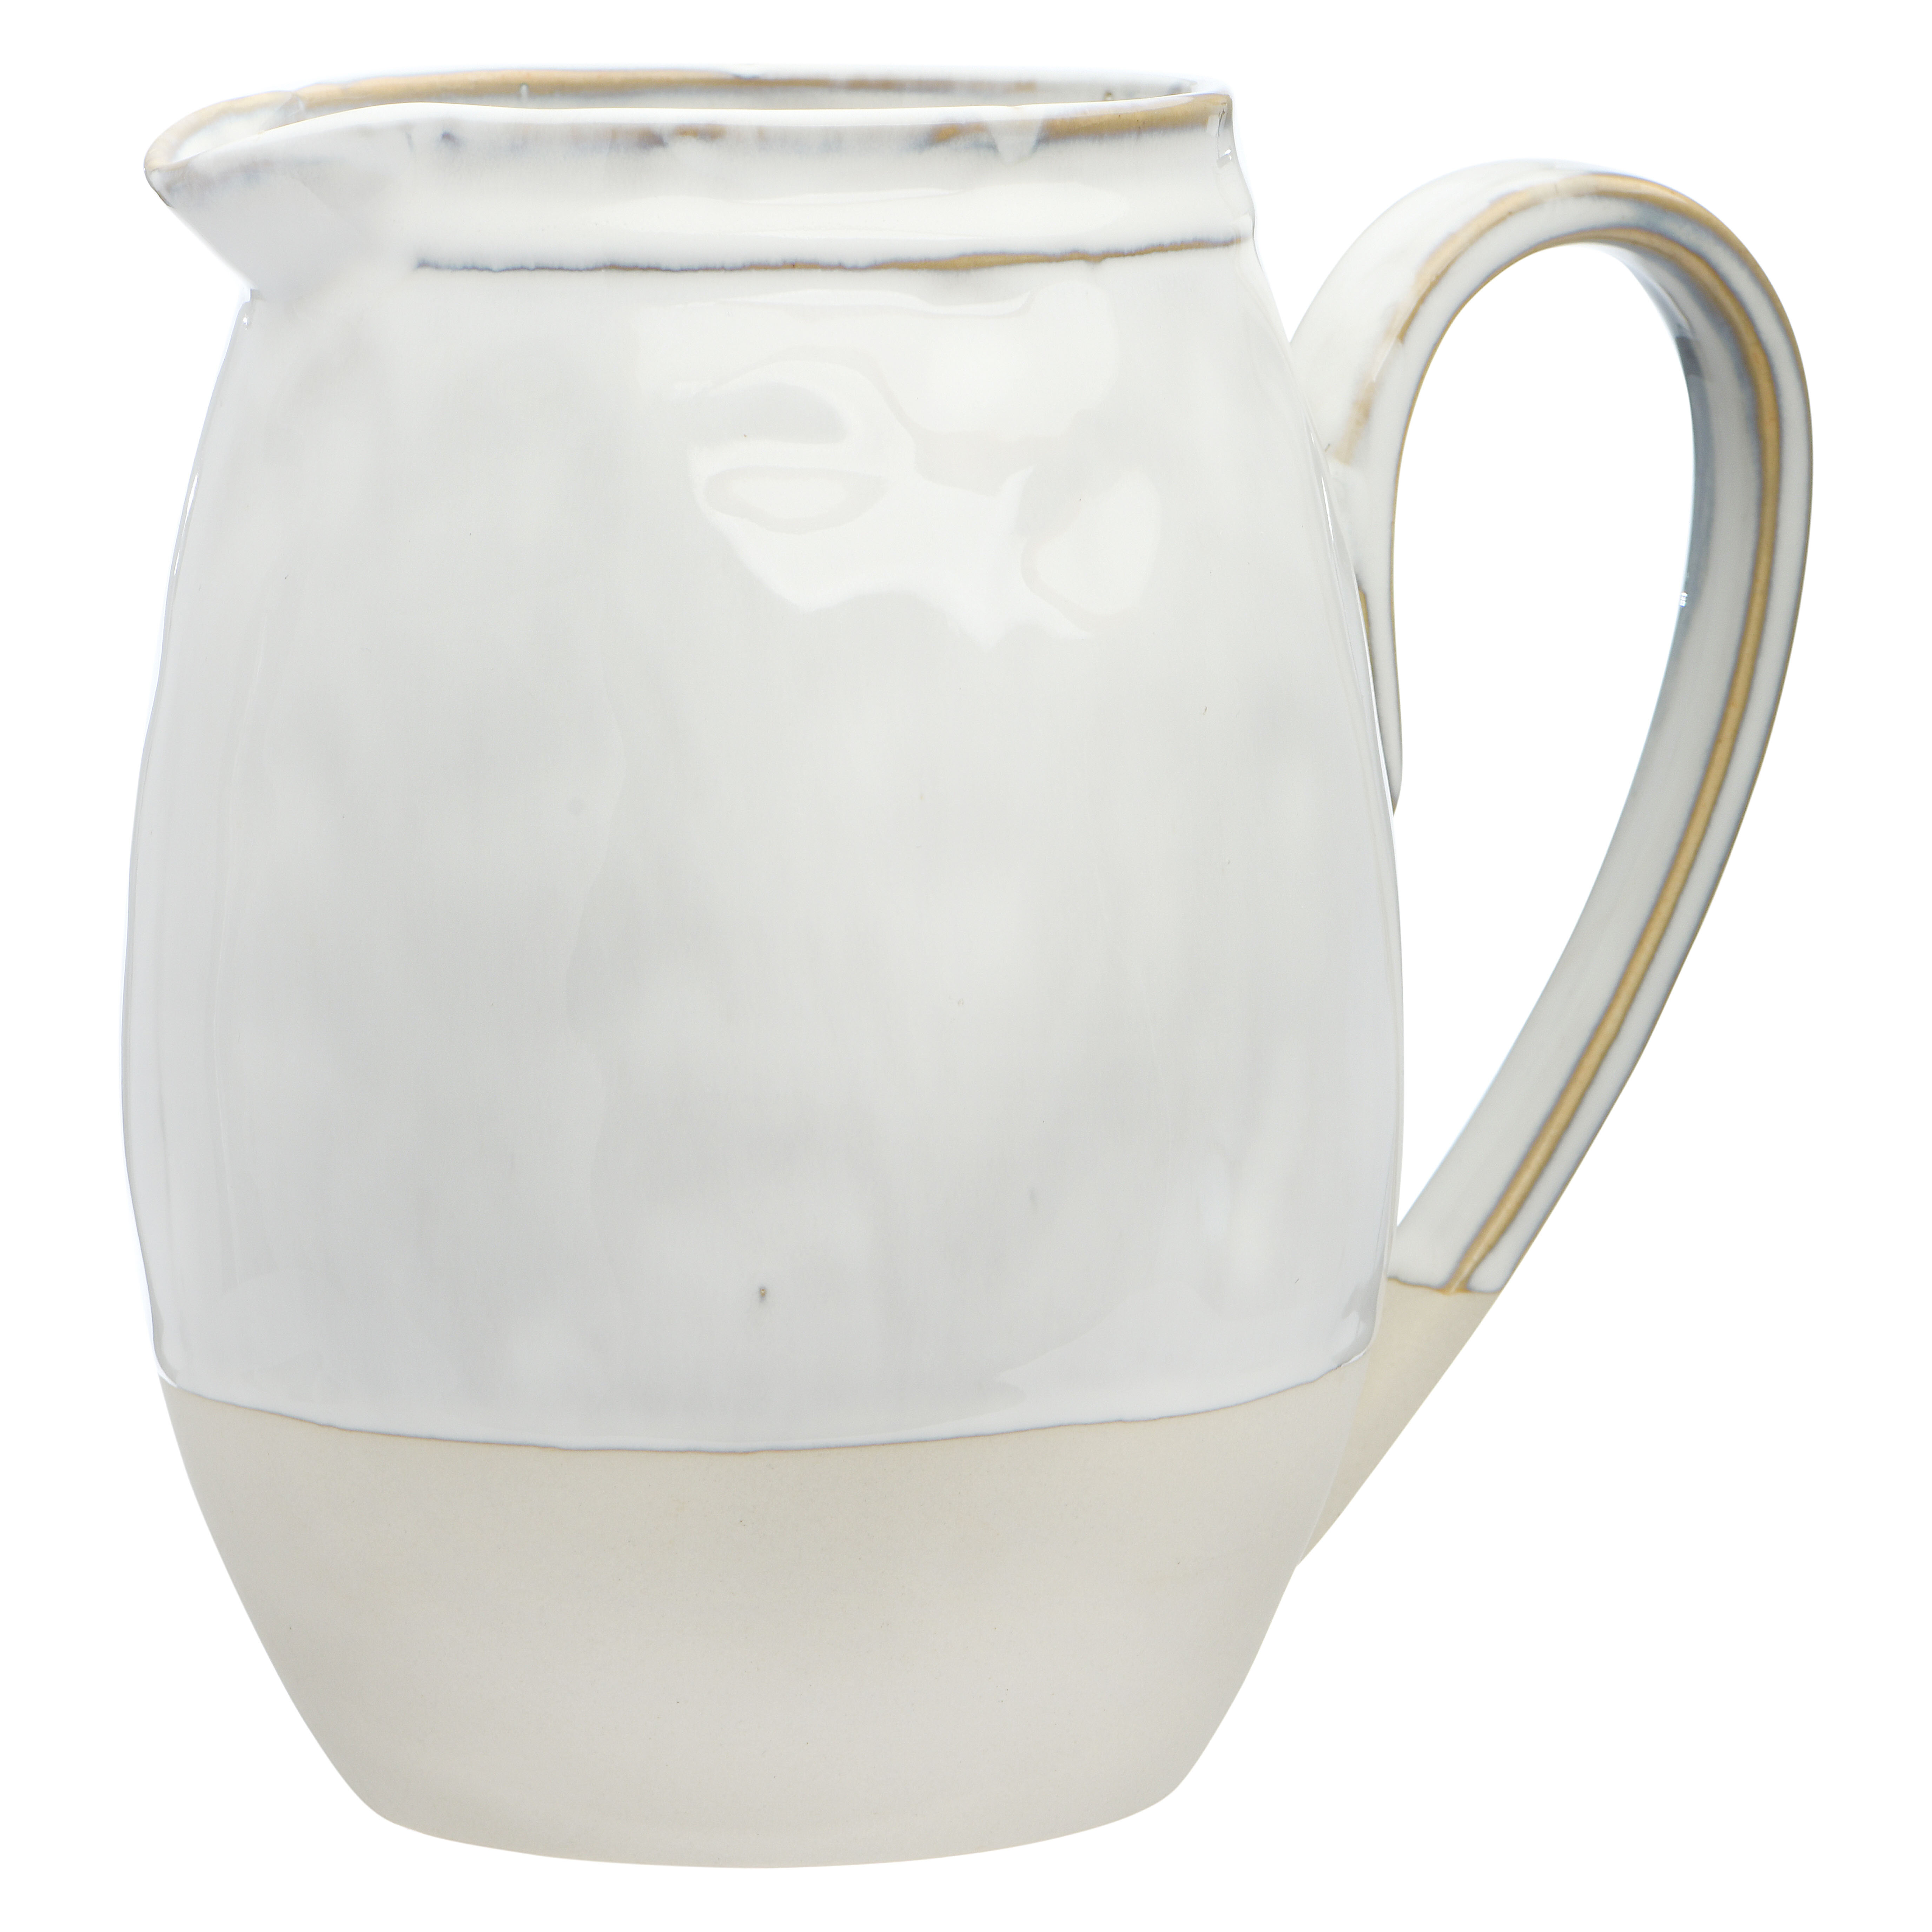 https://assets.wfcdn.com/im/11908610/compr-r85/1286/128681149/bruyere-stoneware-48-oz-pitcher.jpg